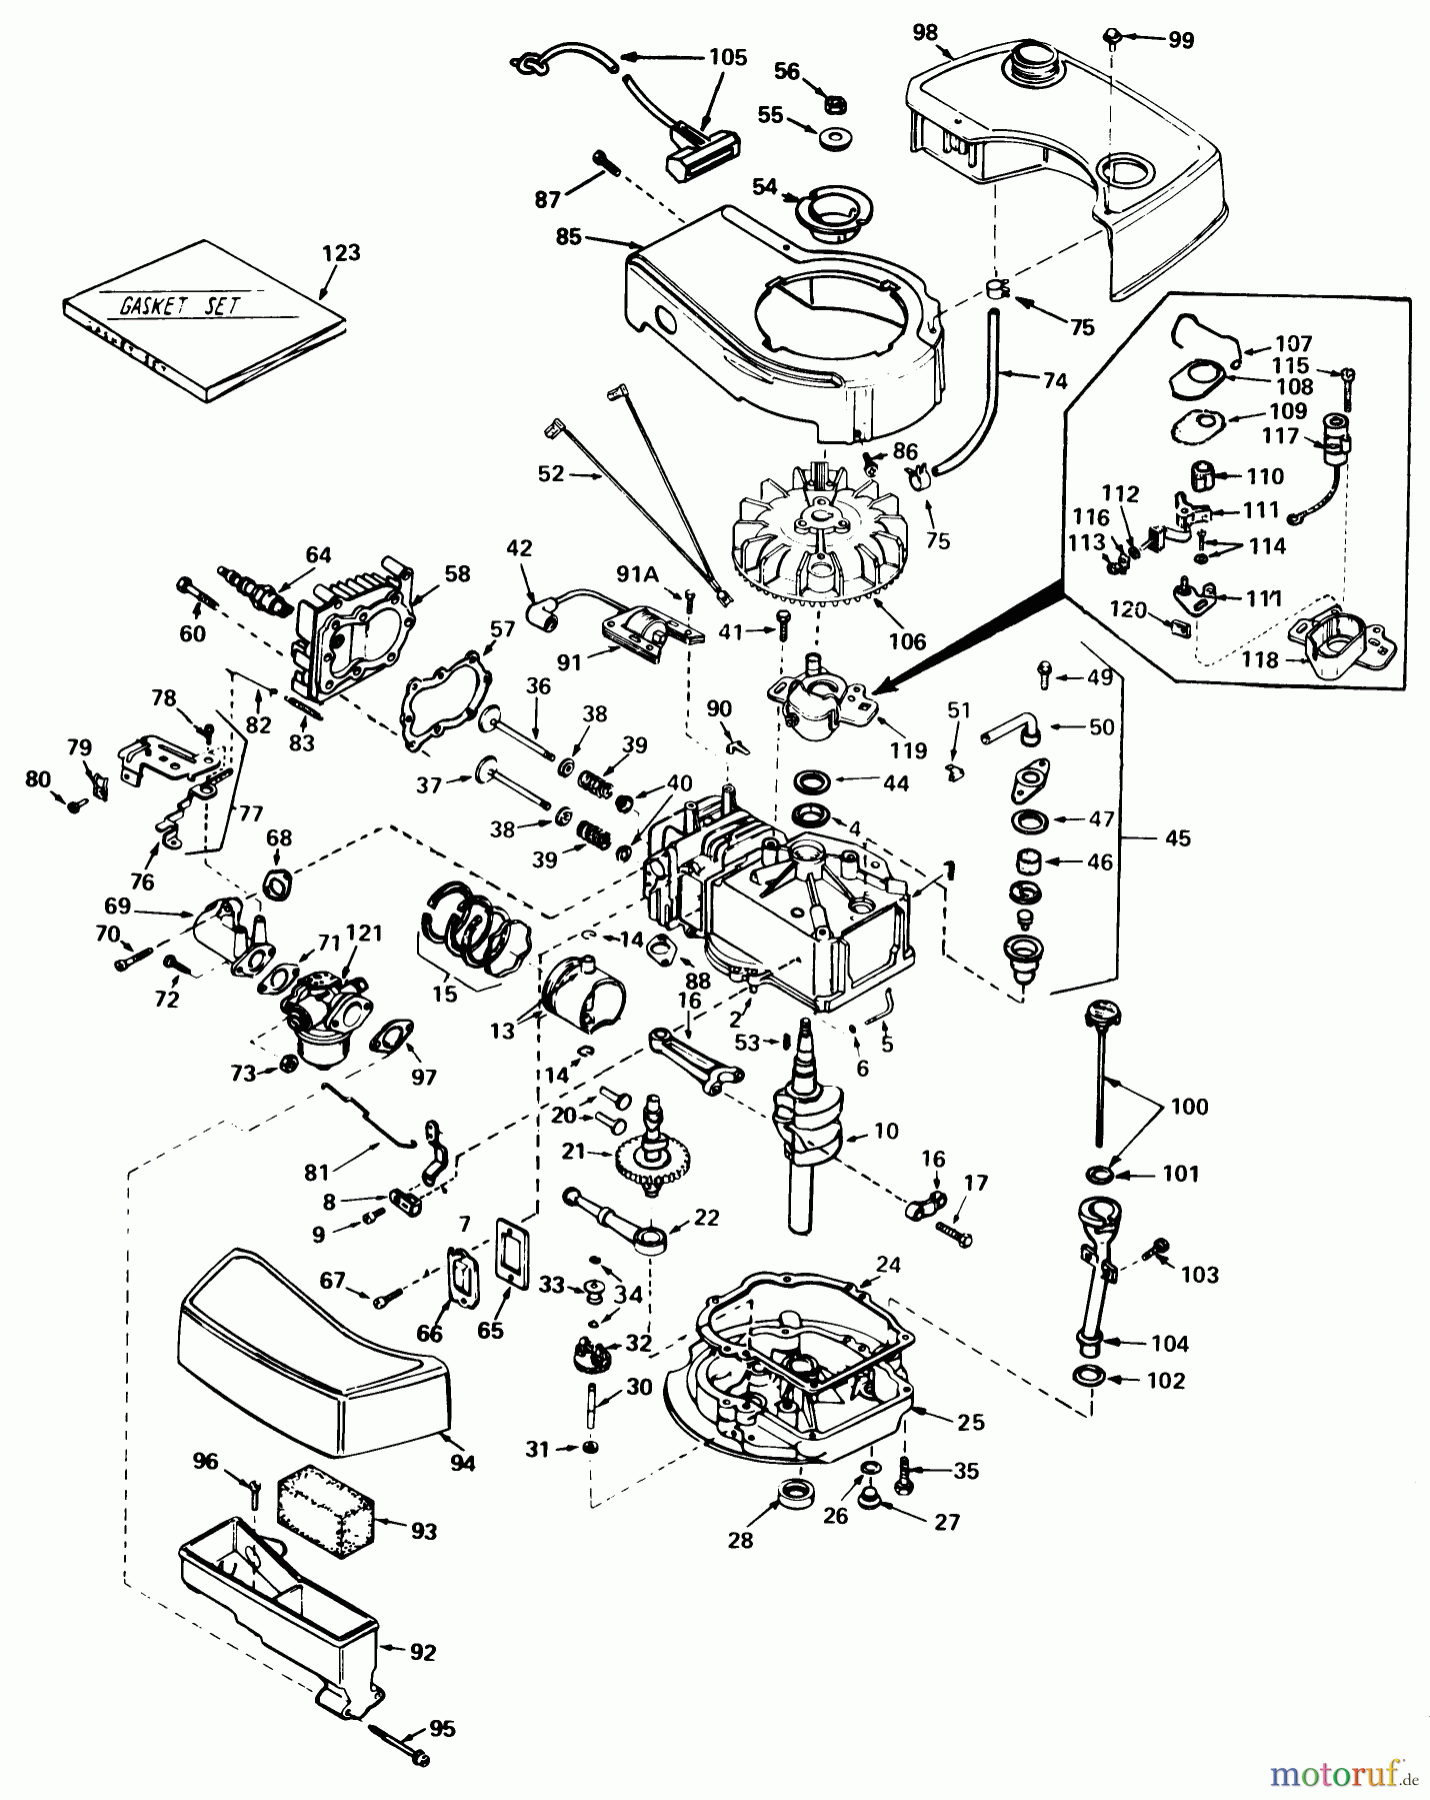  Toro Neu Mowers, Walk-Behind Seite 1 18085 - Toro Lawnmower, 1980 (0000001-0999999) ENGINE TECUMSEH MODEL NO. TNT 100-10060C